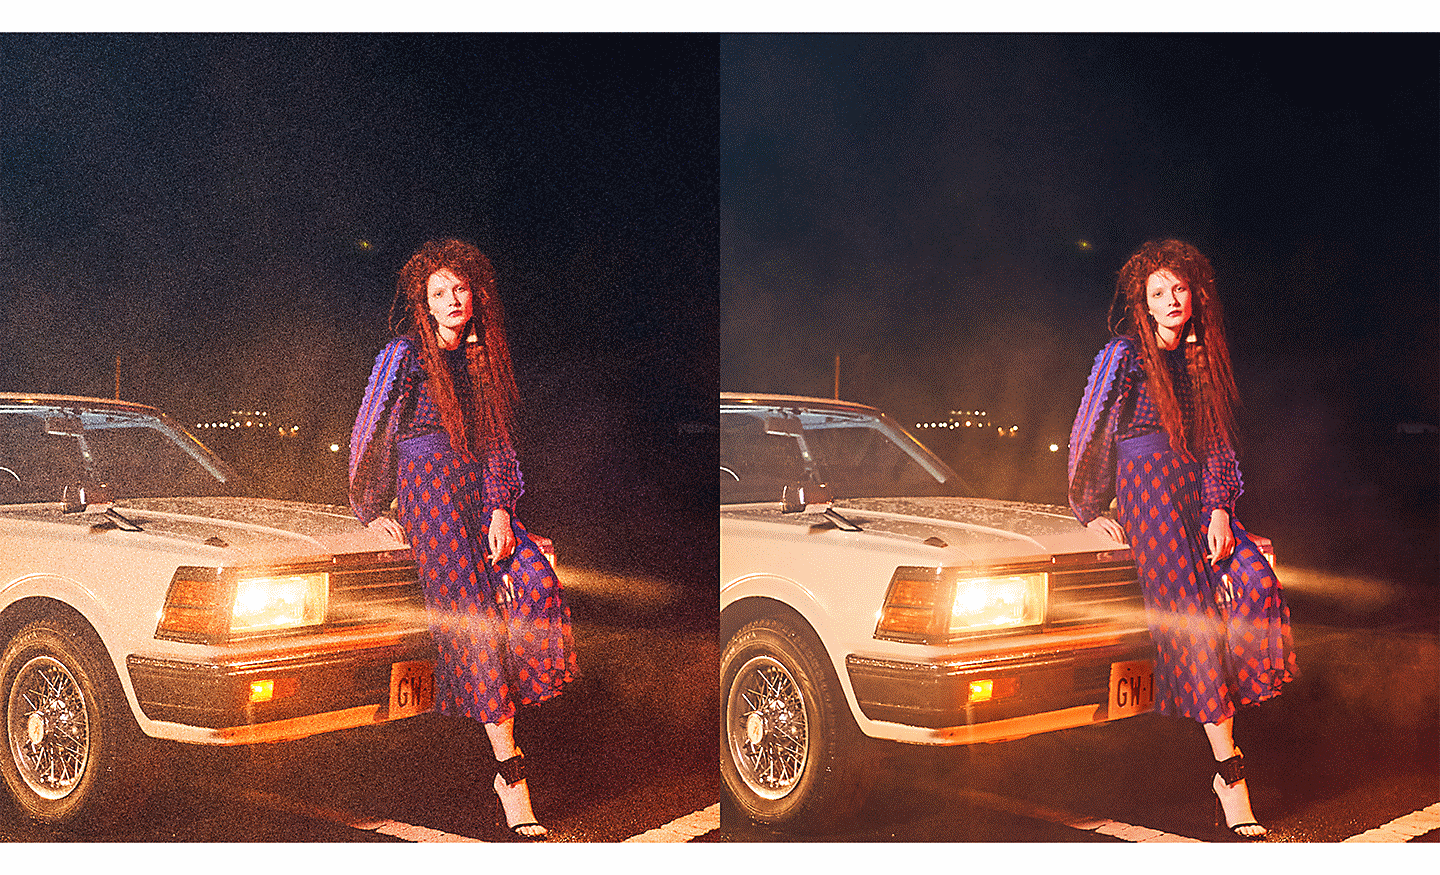 Deux images d’une femme appuyée contre une voiture, l’une affichant moins de bruit que l’autre.